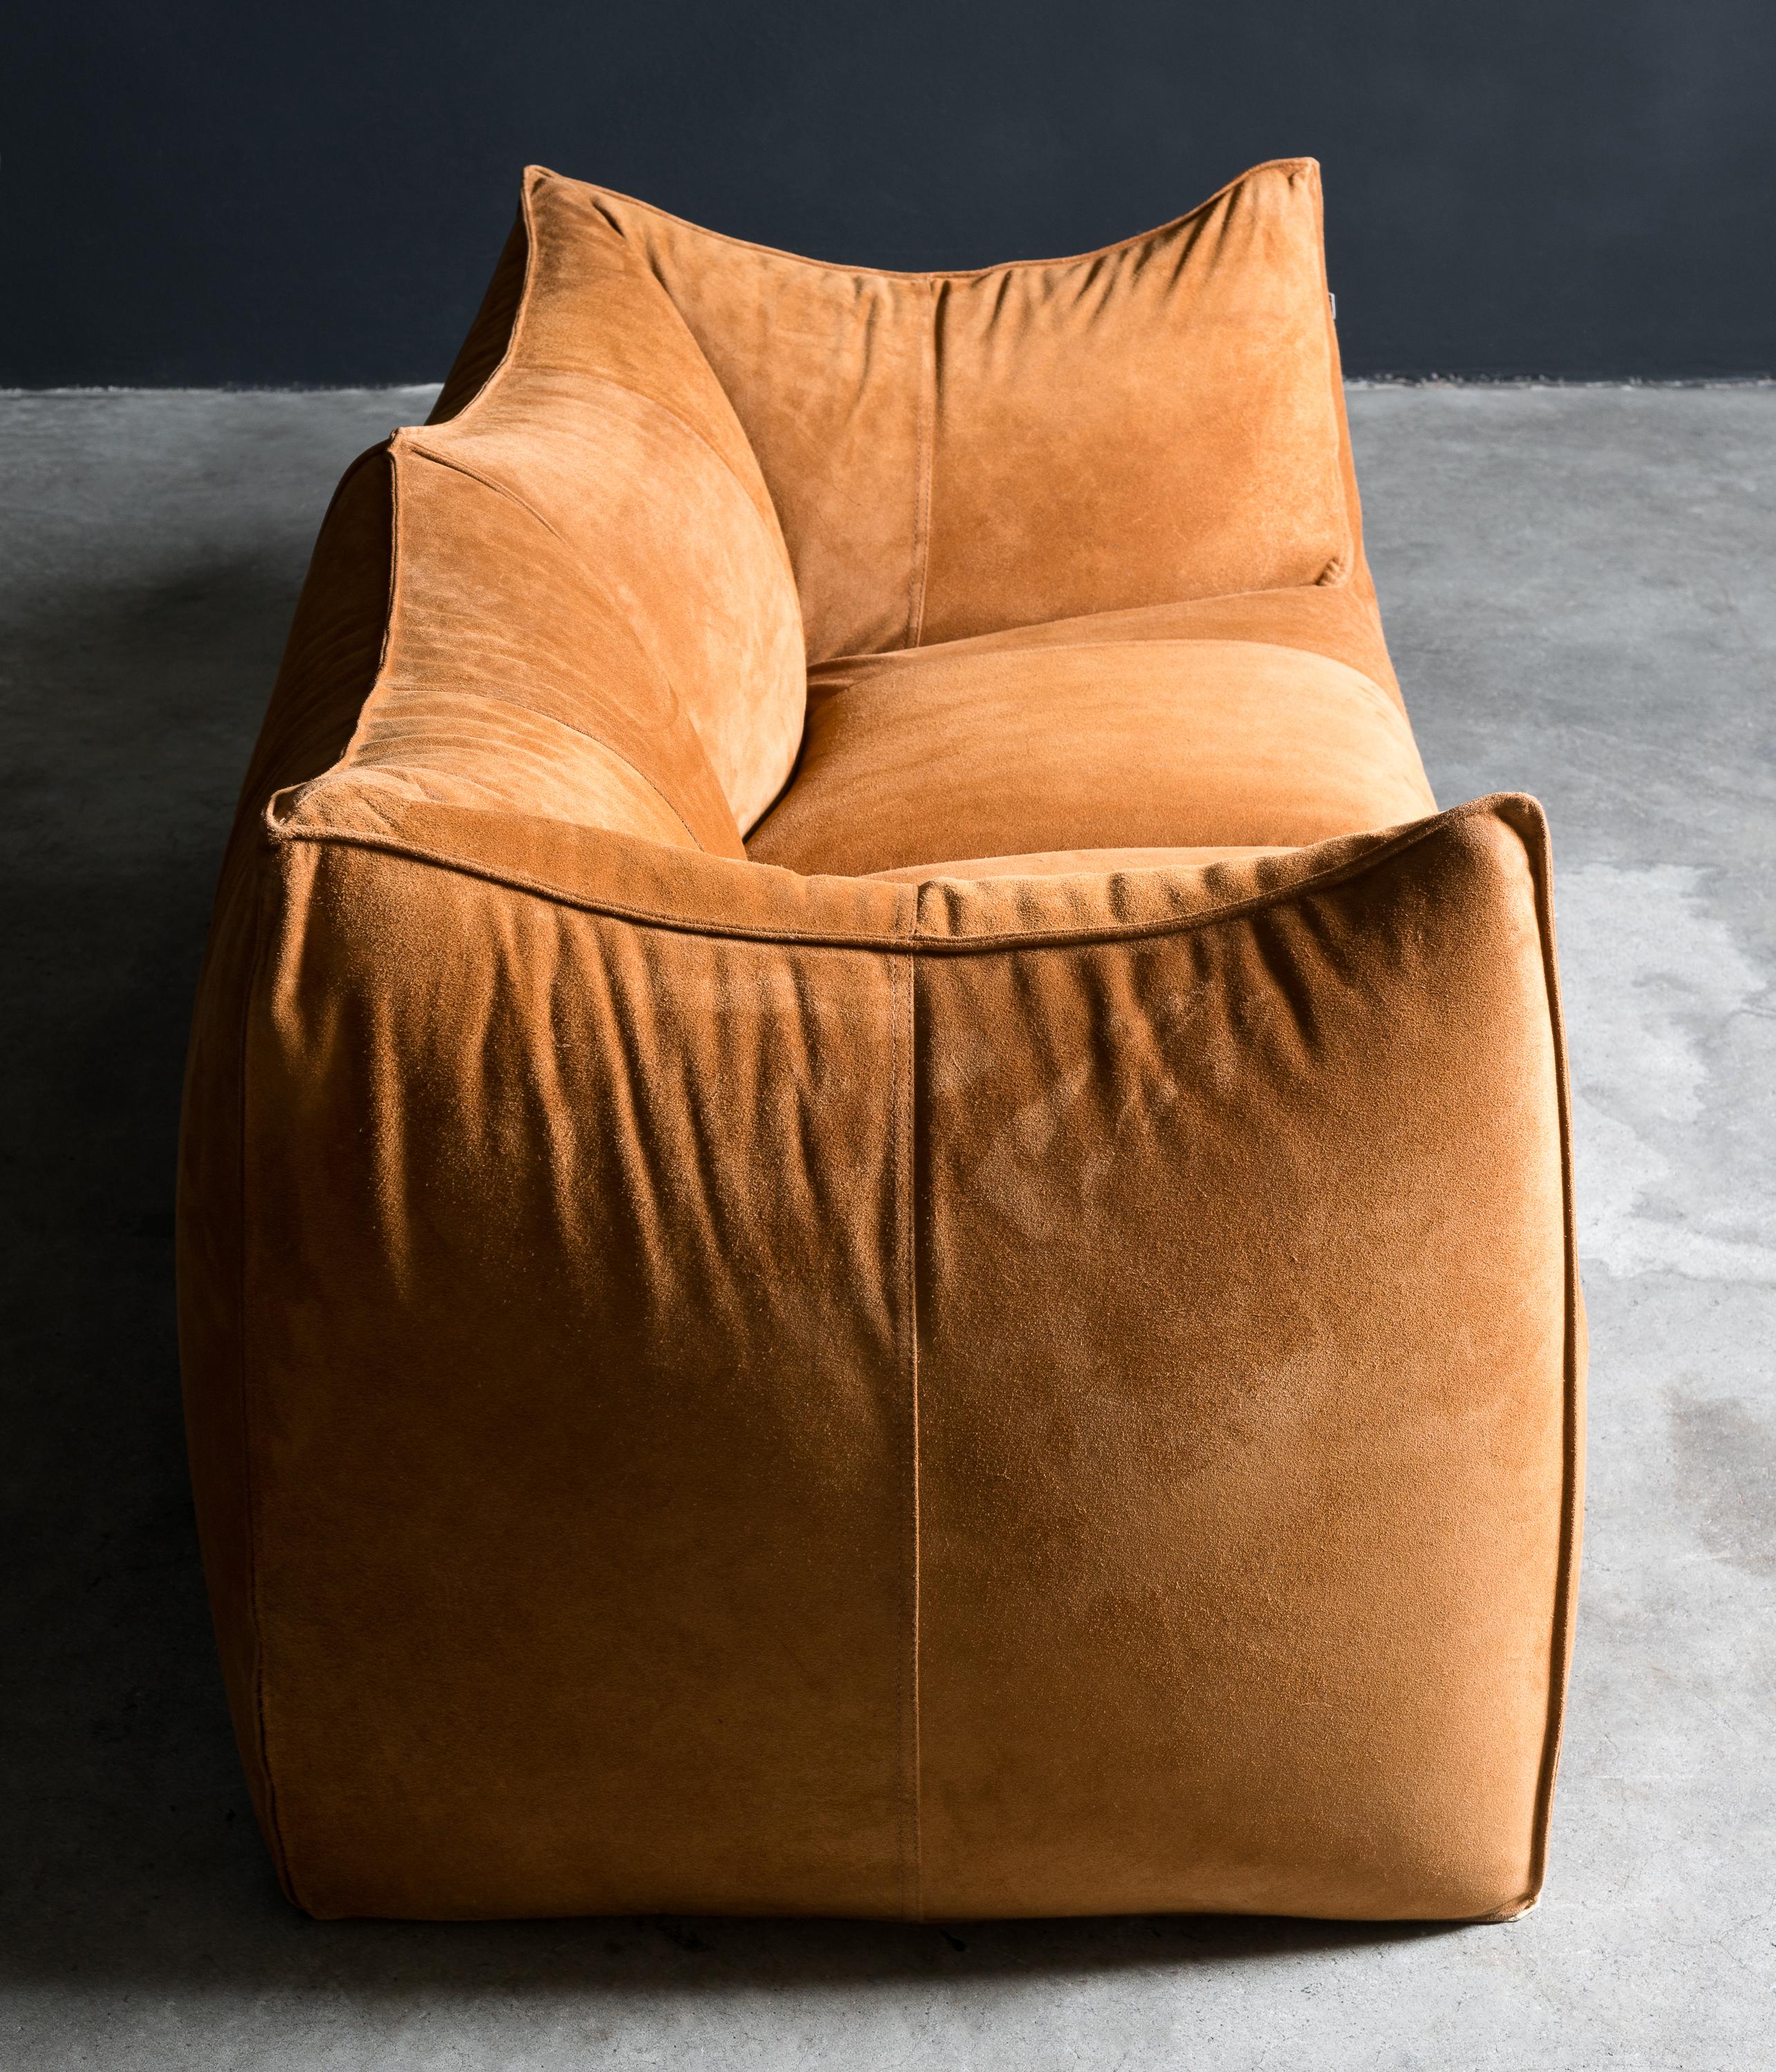 Italian B&B Italia Le Bambole sofa in Suede Leather